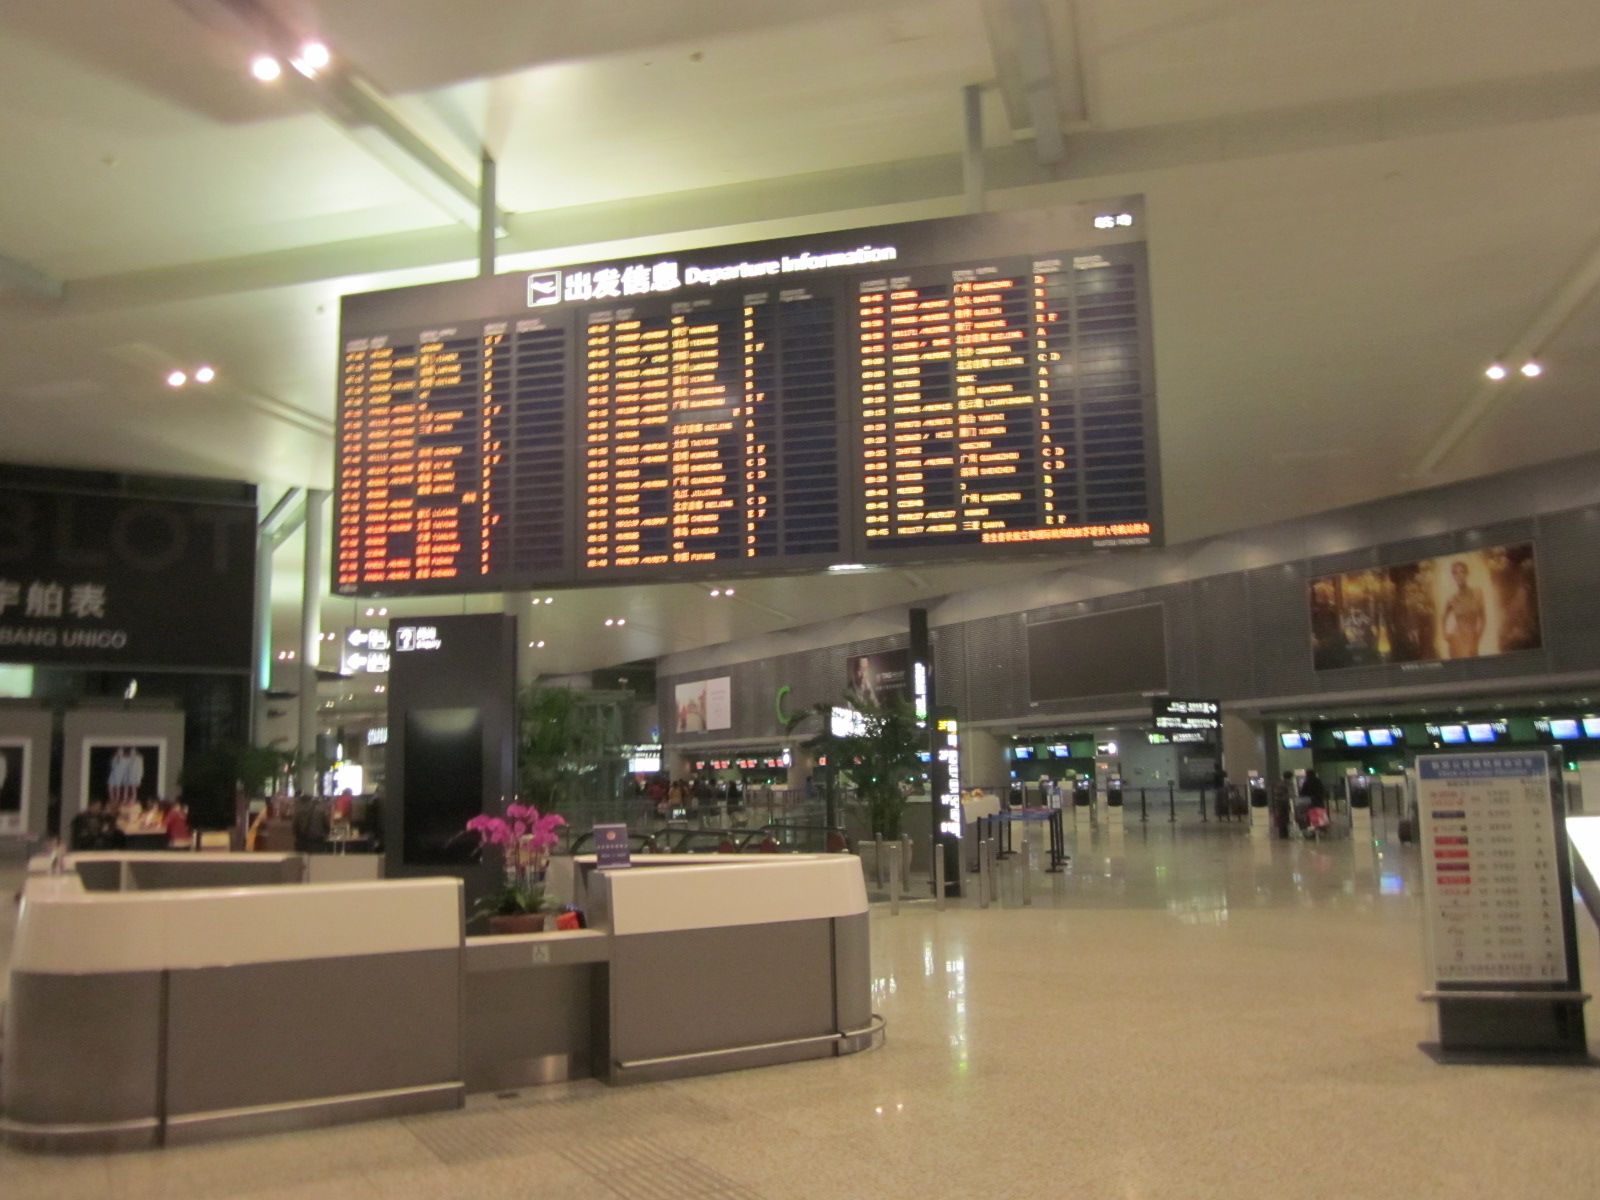 上海虹桥机场t2航站楼,虹桥机场t2值机柜台图 - 伤感说说吧